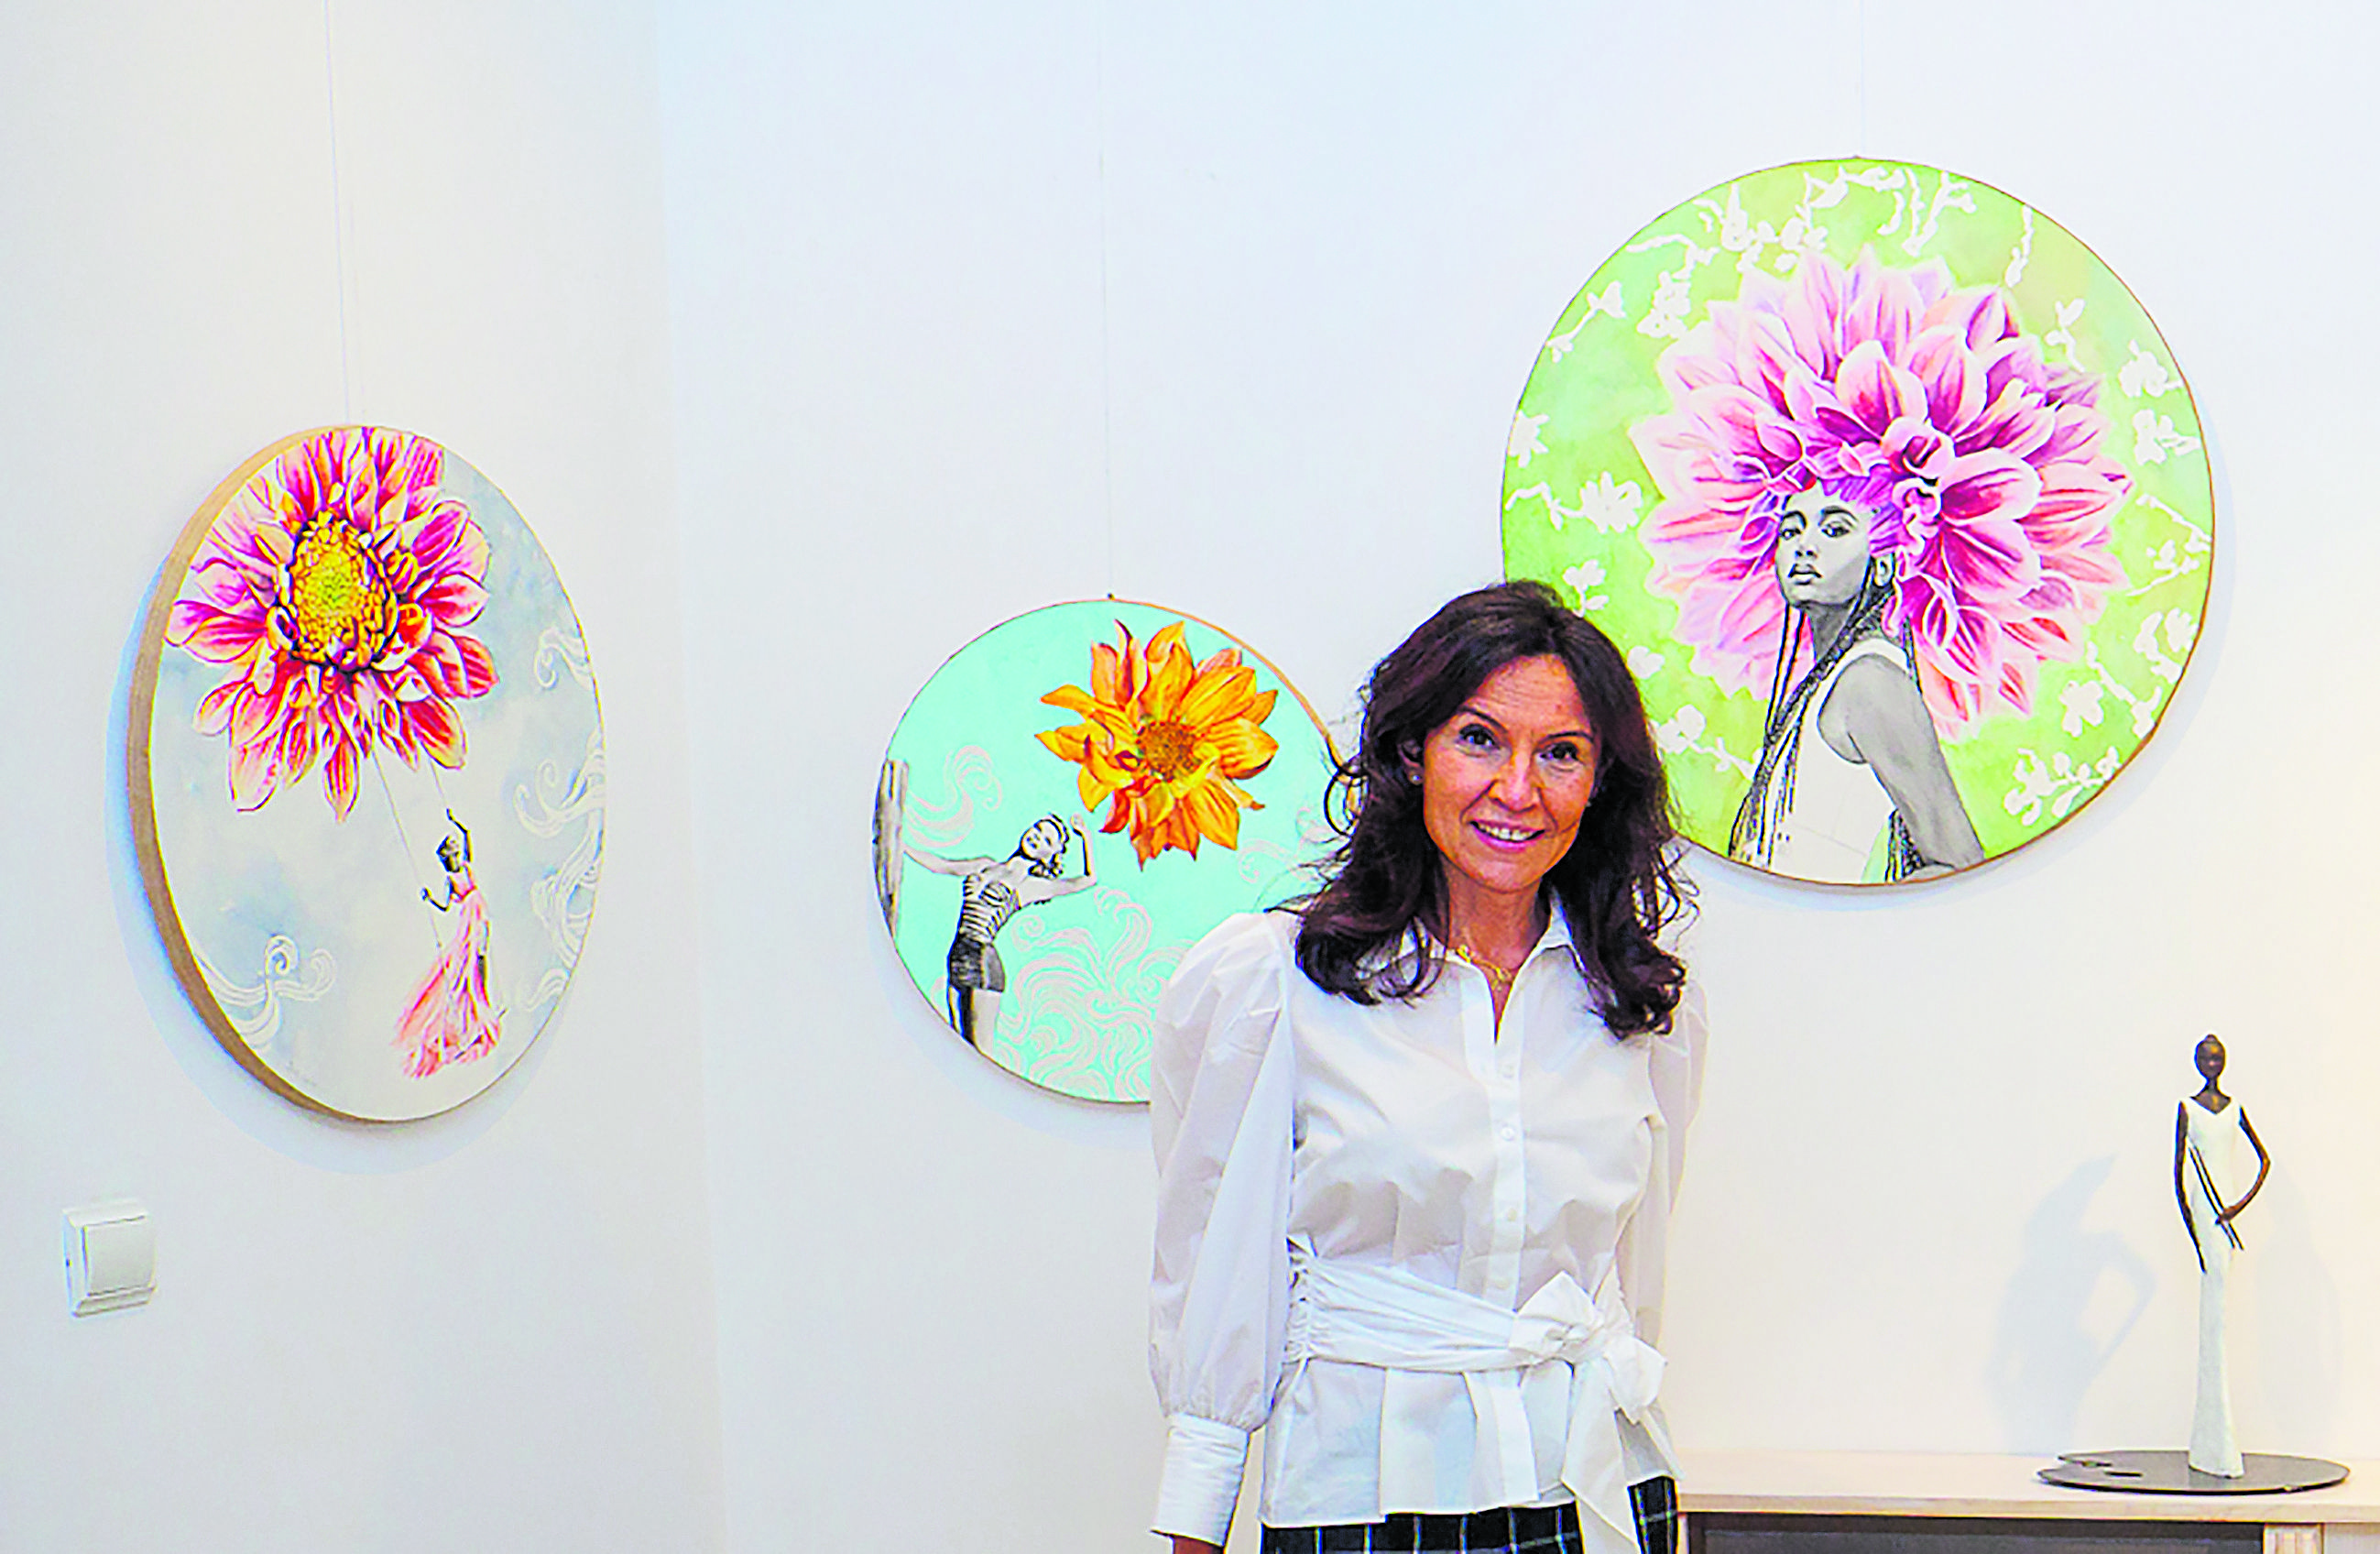 La artista zaragozana expone su universo femenino repleto de flores. | VICENTE GARCÍA